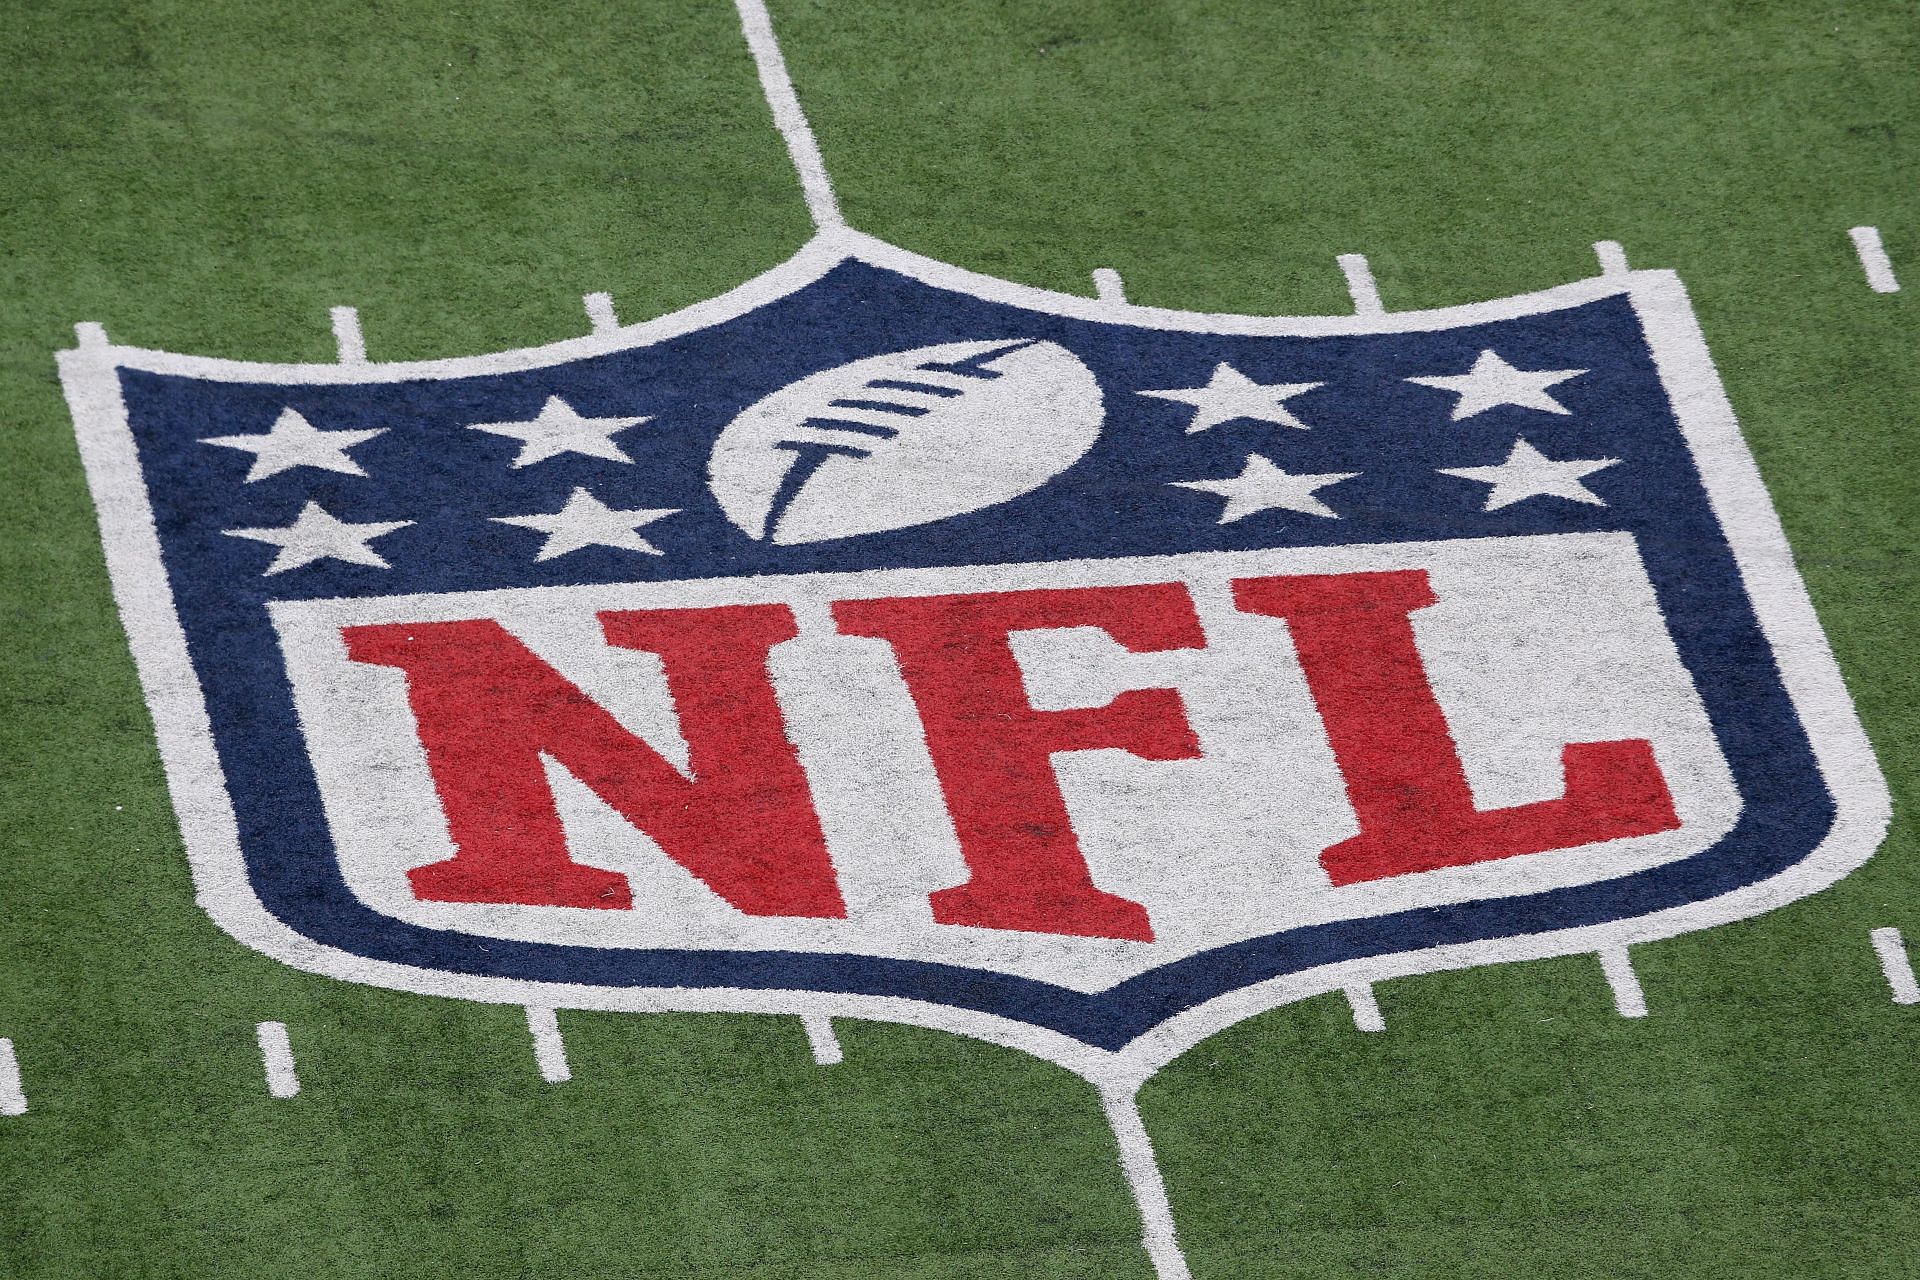 NFL Week 15: Which NFL teams have a bye this week?